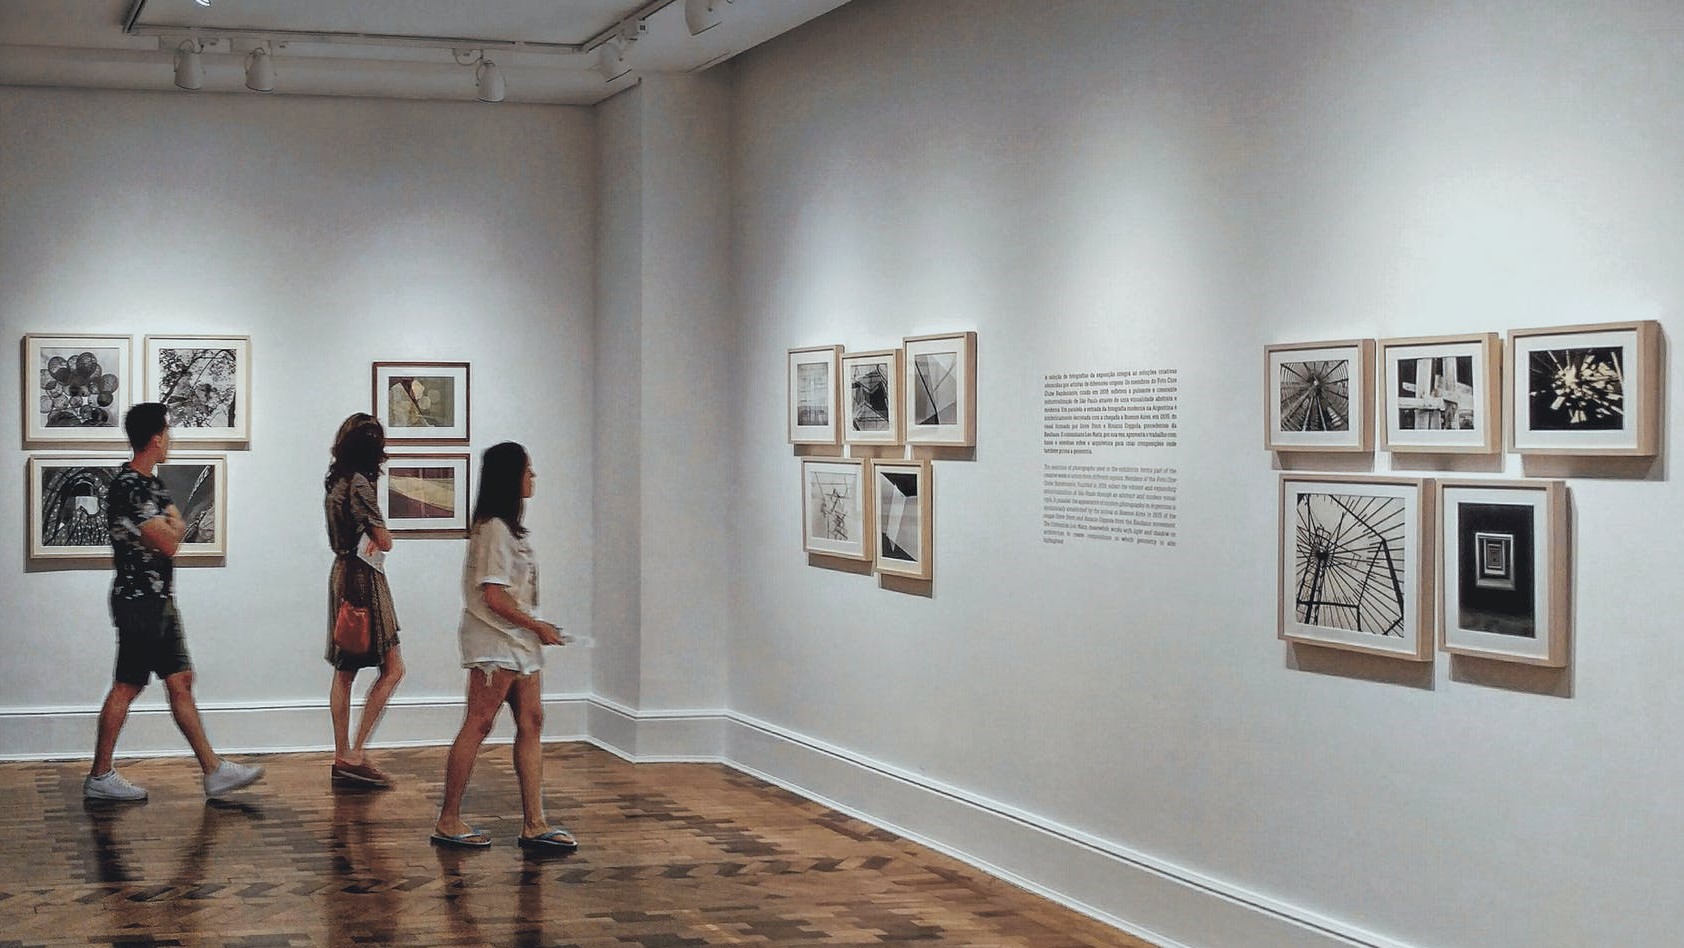 图中展示了三位参观者在画廊内观赏墙上挂着的不同风格的黑白艺术照片。